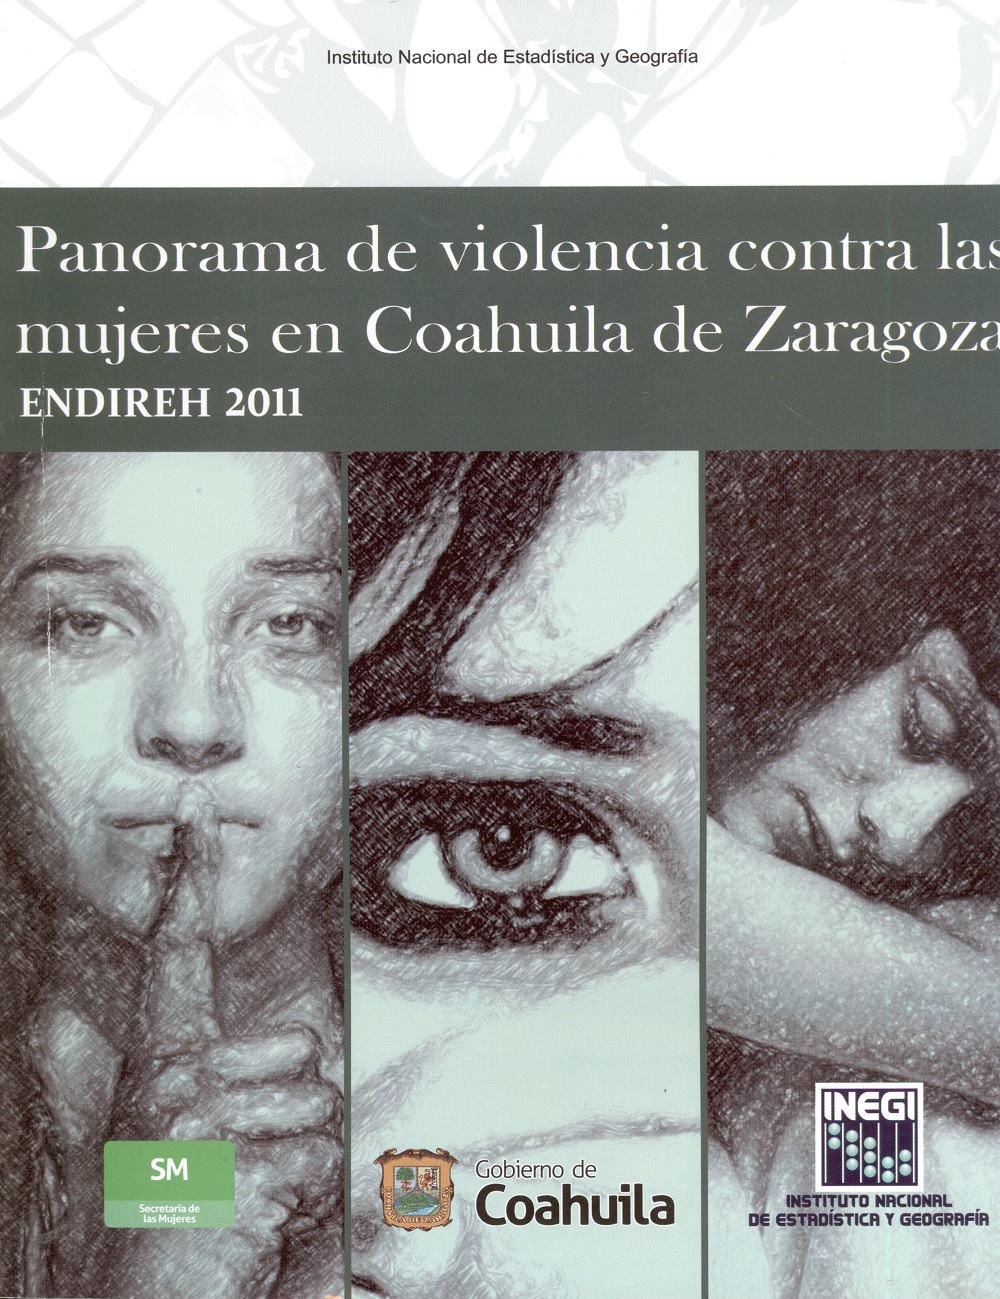 Panorama de violencia contra las mujeres en Coahuila de Zaragoza "ENDIREH 2011"